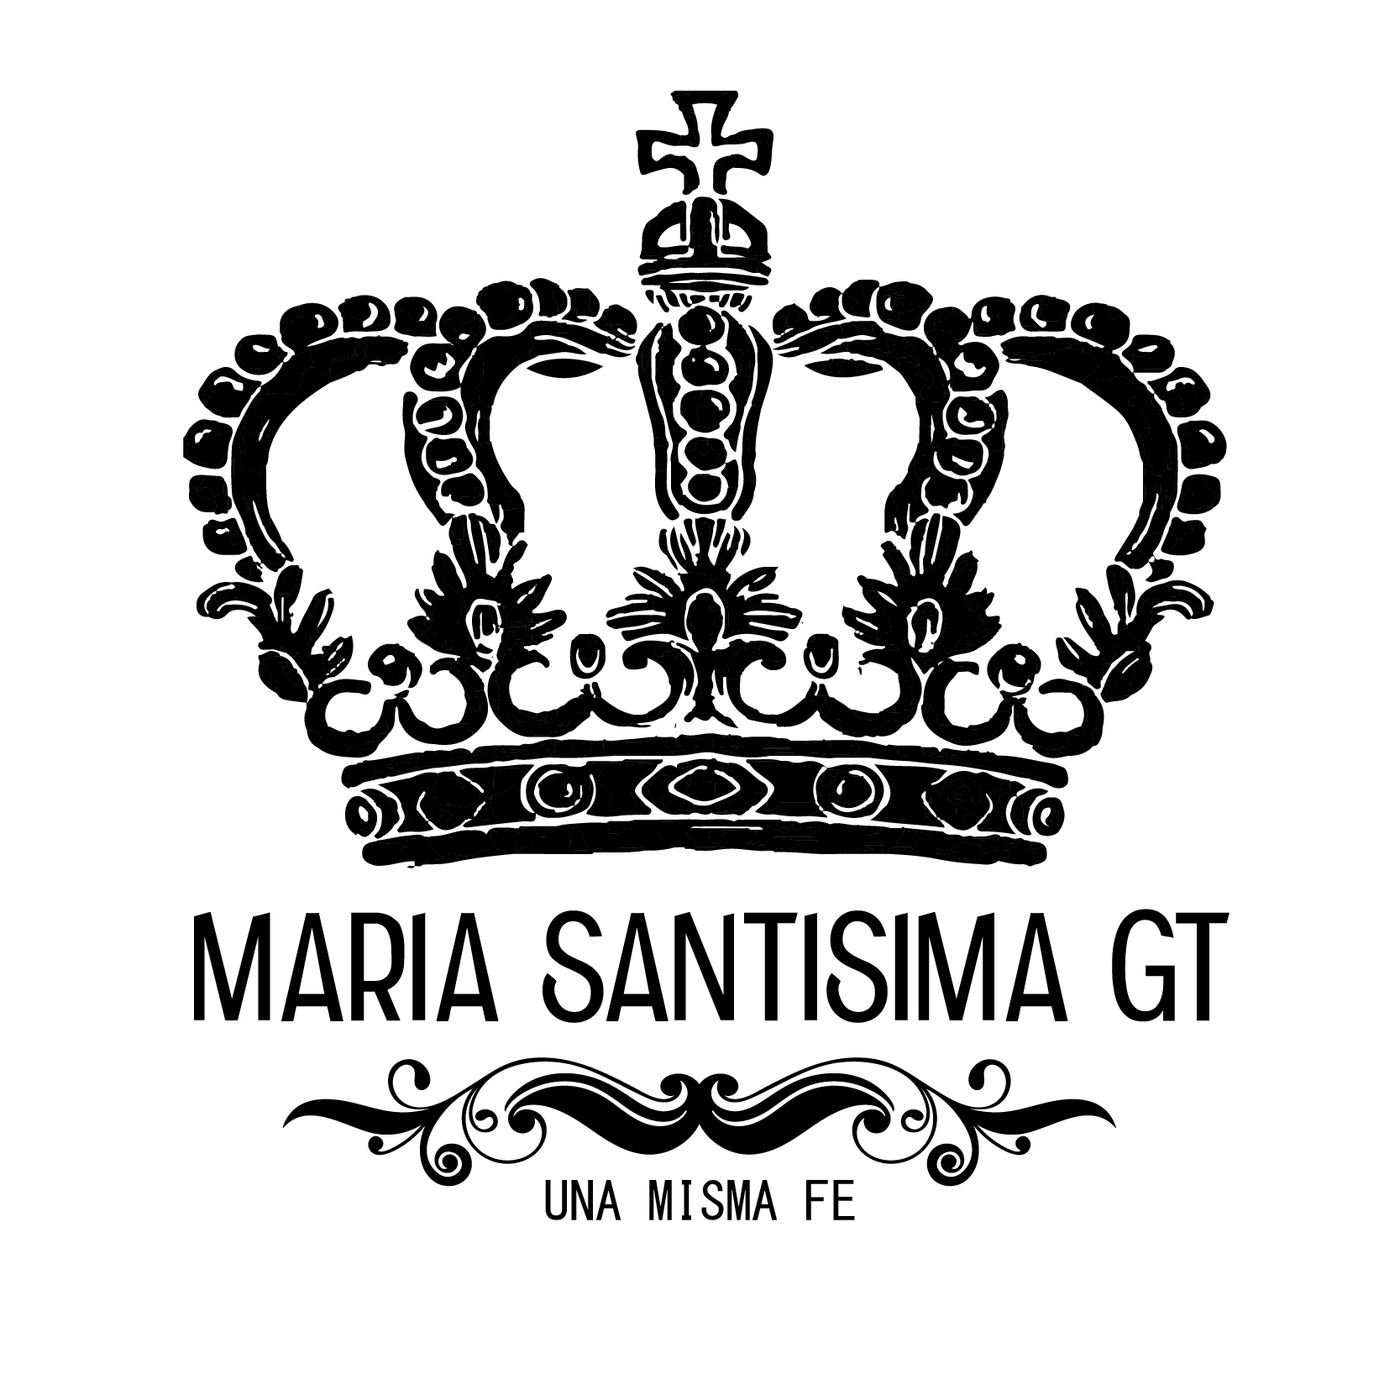 Maria Santisima GT